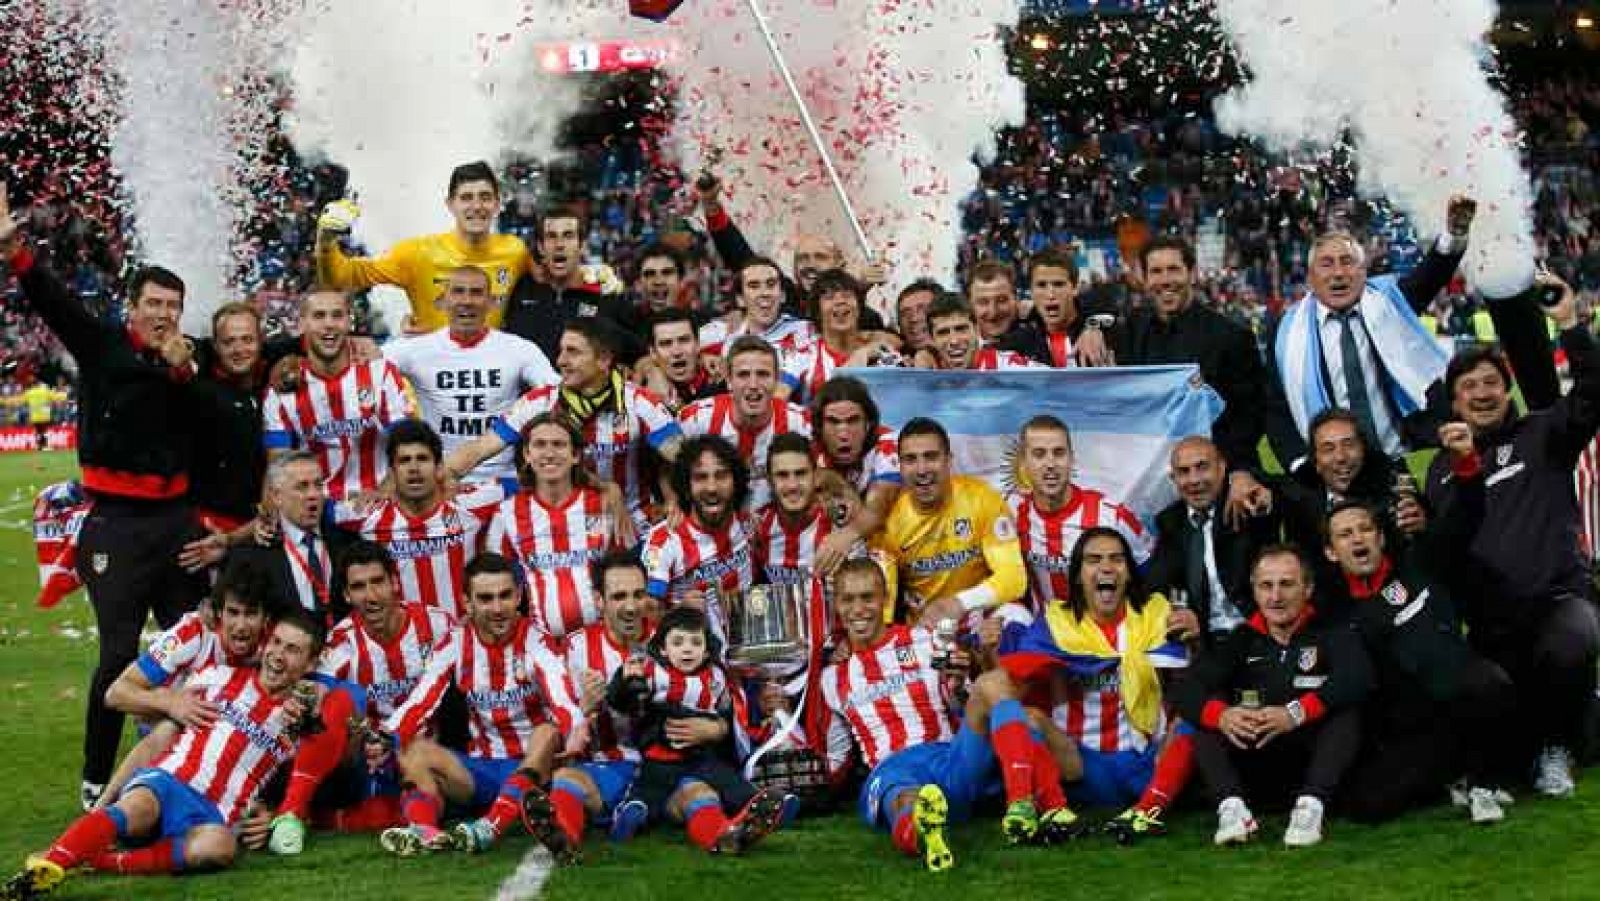 El Atlético de Madrid rompió su racha de 25 derrotas ante el Real Madrid, al que ganó (2-1) para hacerse con su décimo título de campeón de la Copa del Rey, tras un choque de gran intensidad, que llegó hasta una prórroga que desató los nervios.